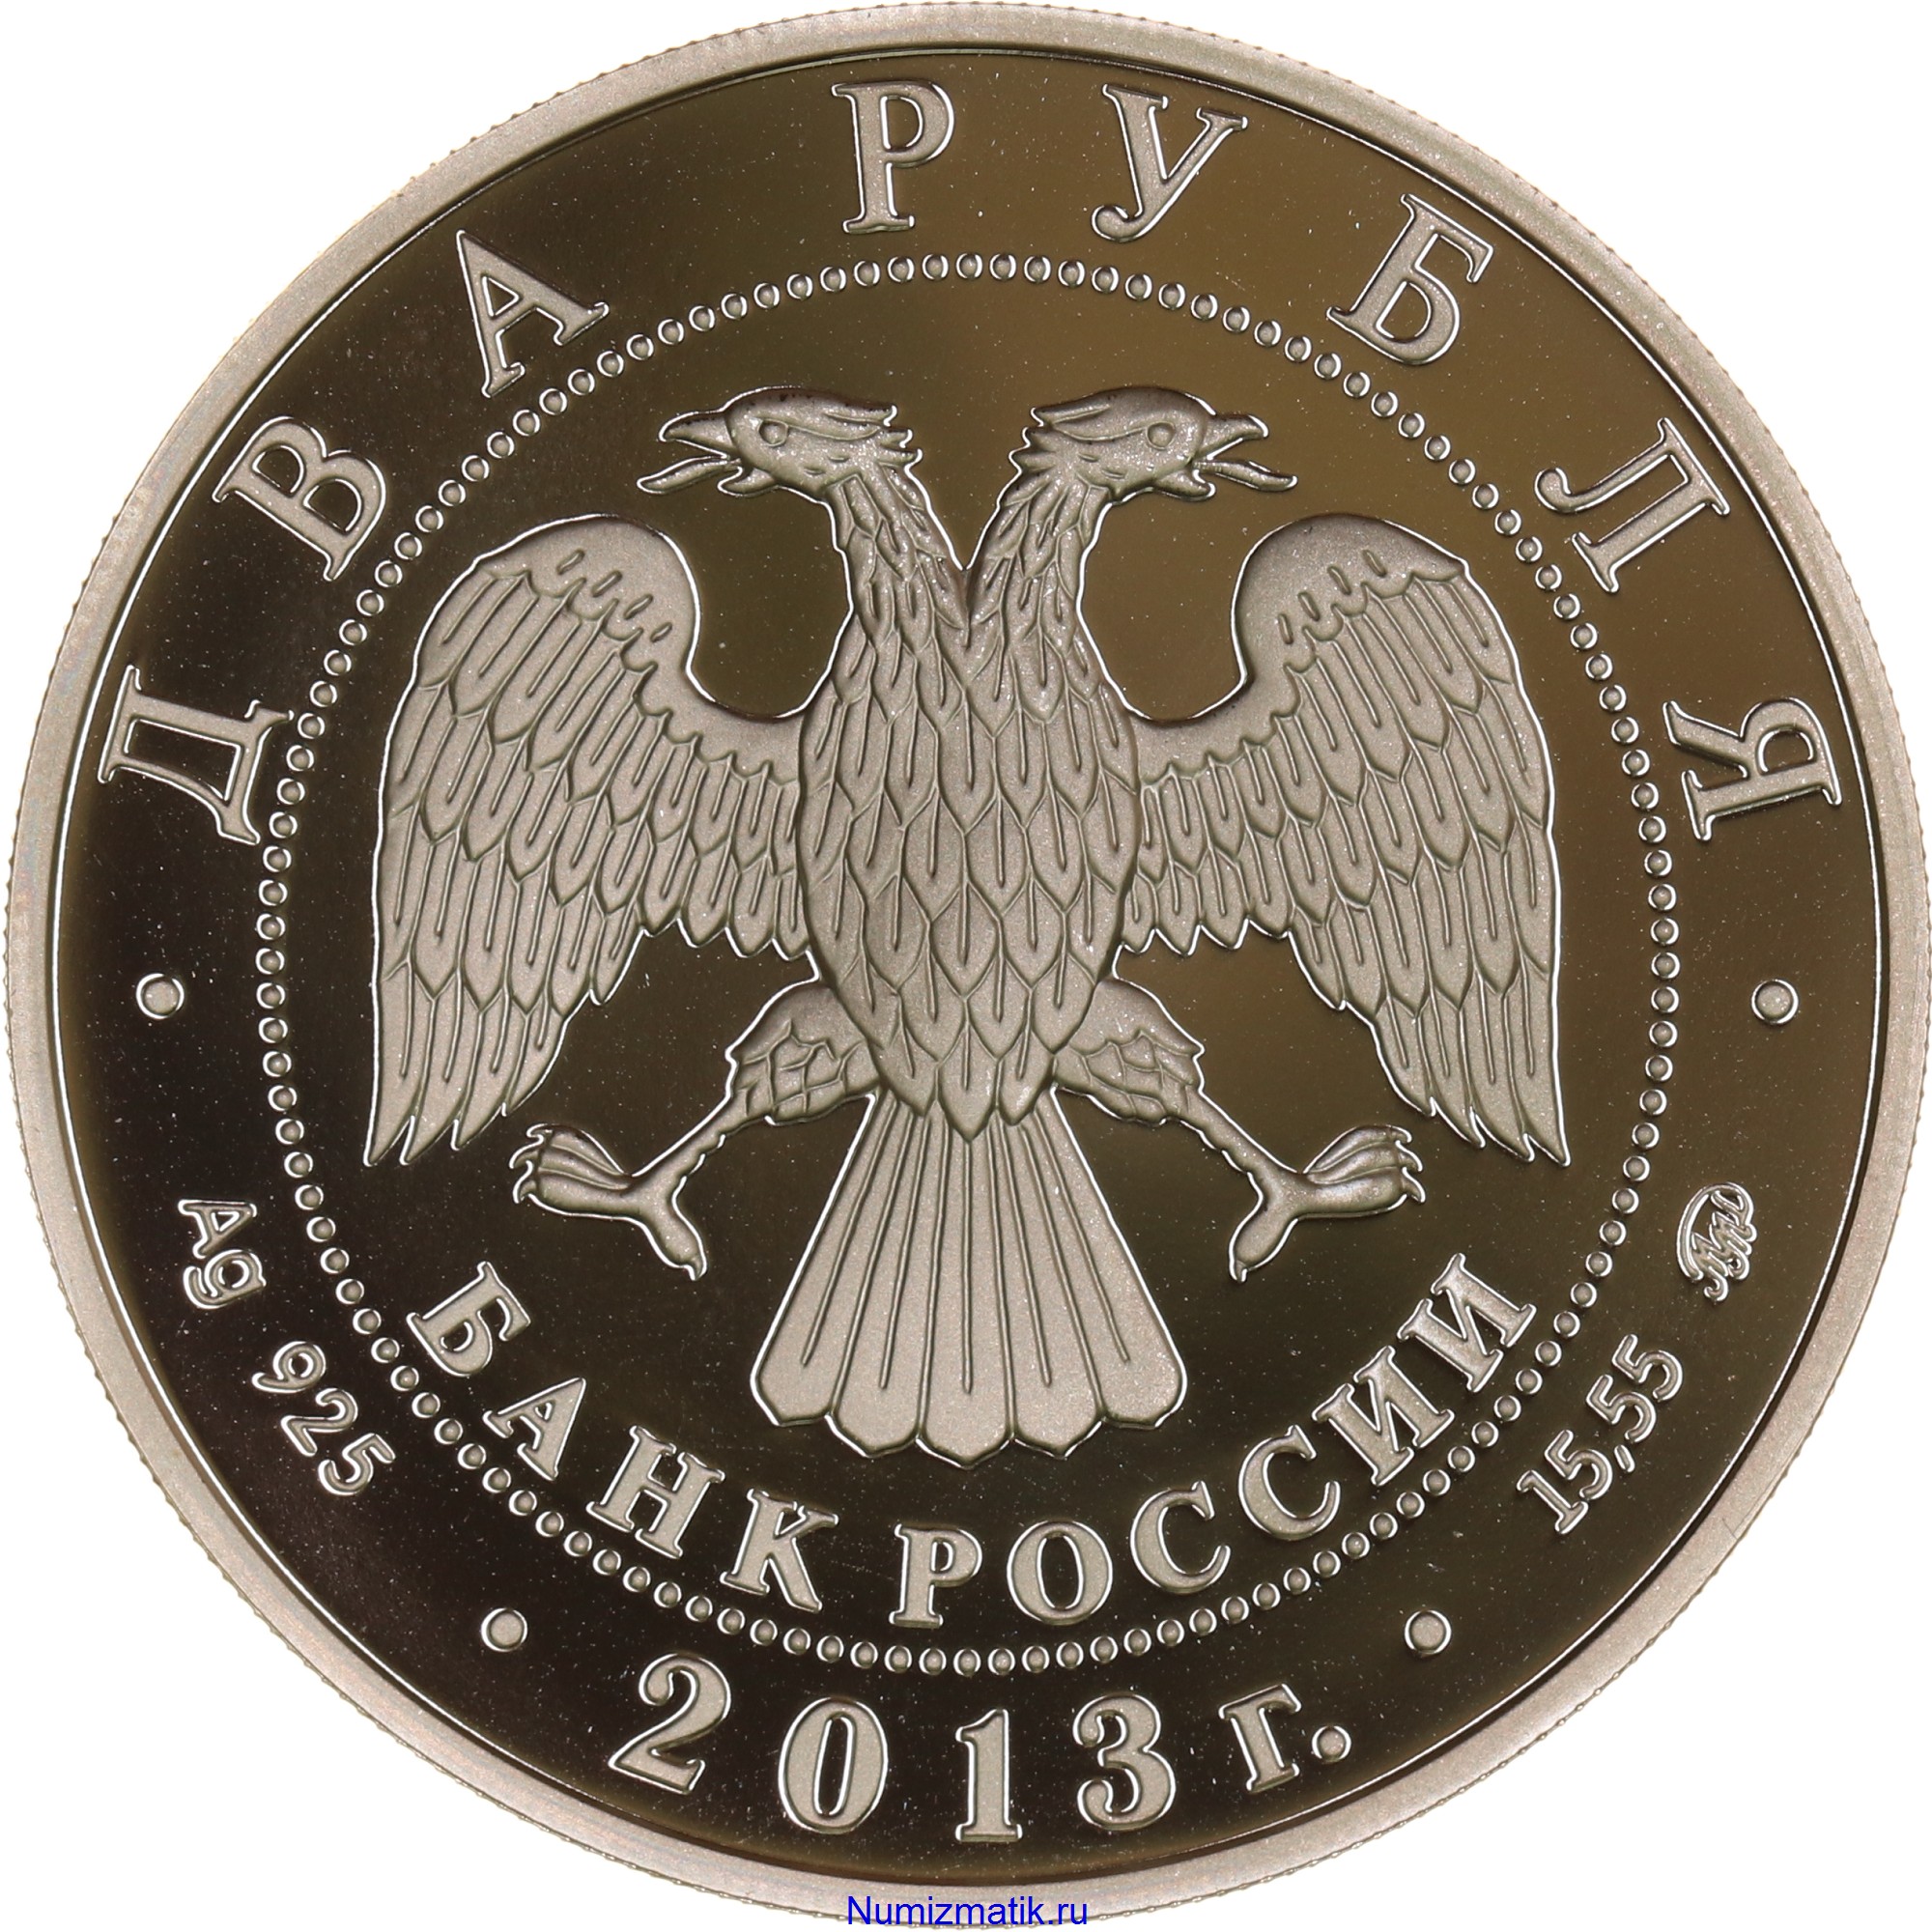 2 рубль россии. Монета серебро 2 рубля. Монета серебро 2 рубля крепость 2002. Серебряная монета 2 рубля. Российские серебряные монеты 2 рубля серебро.